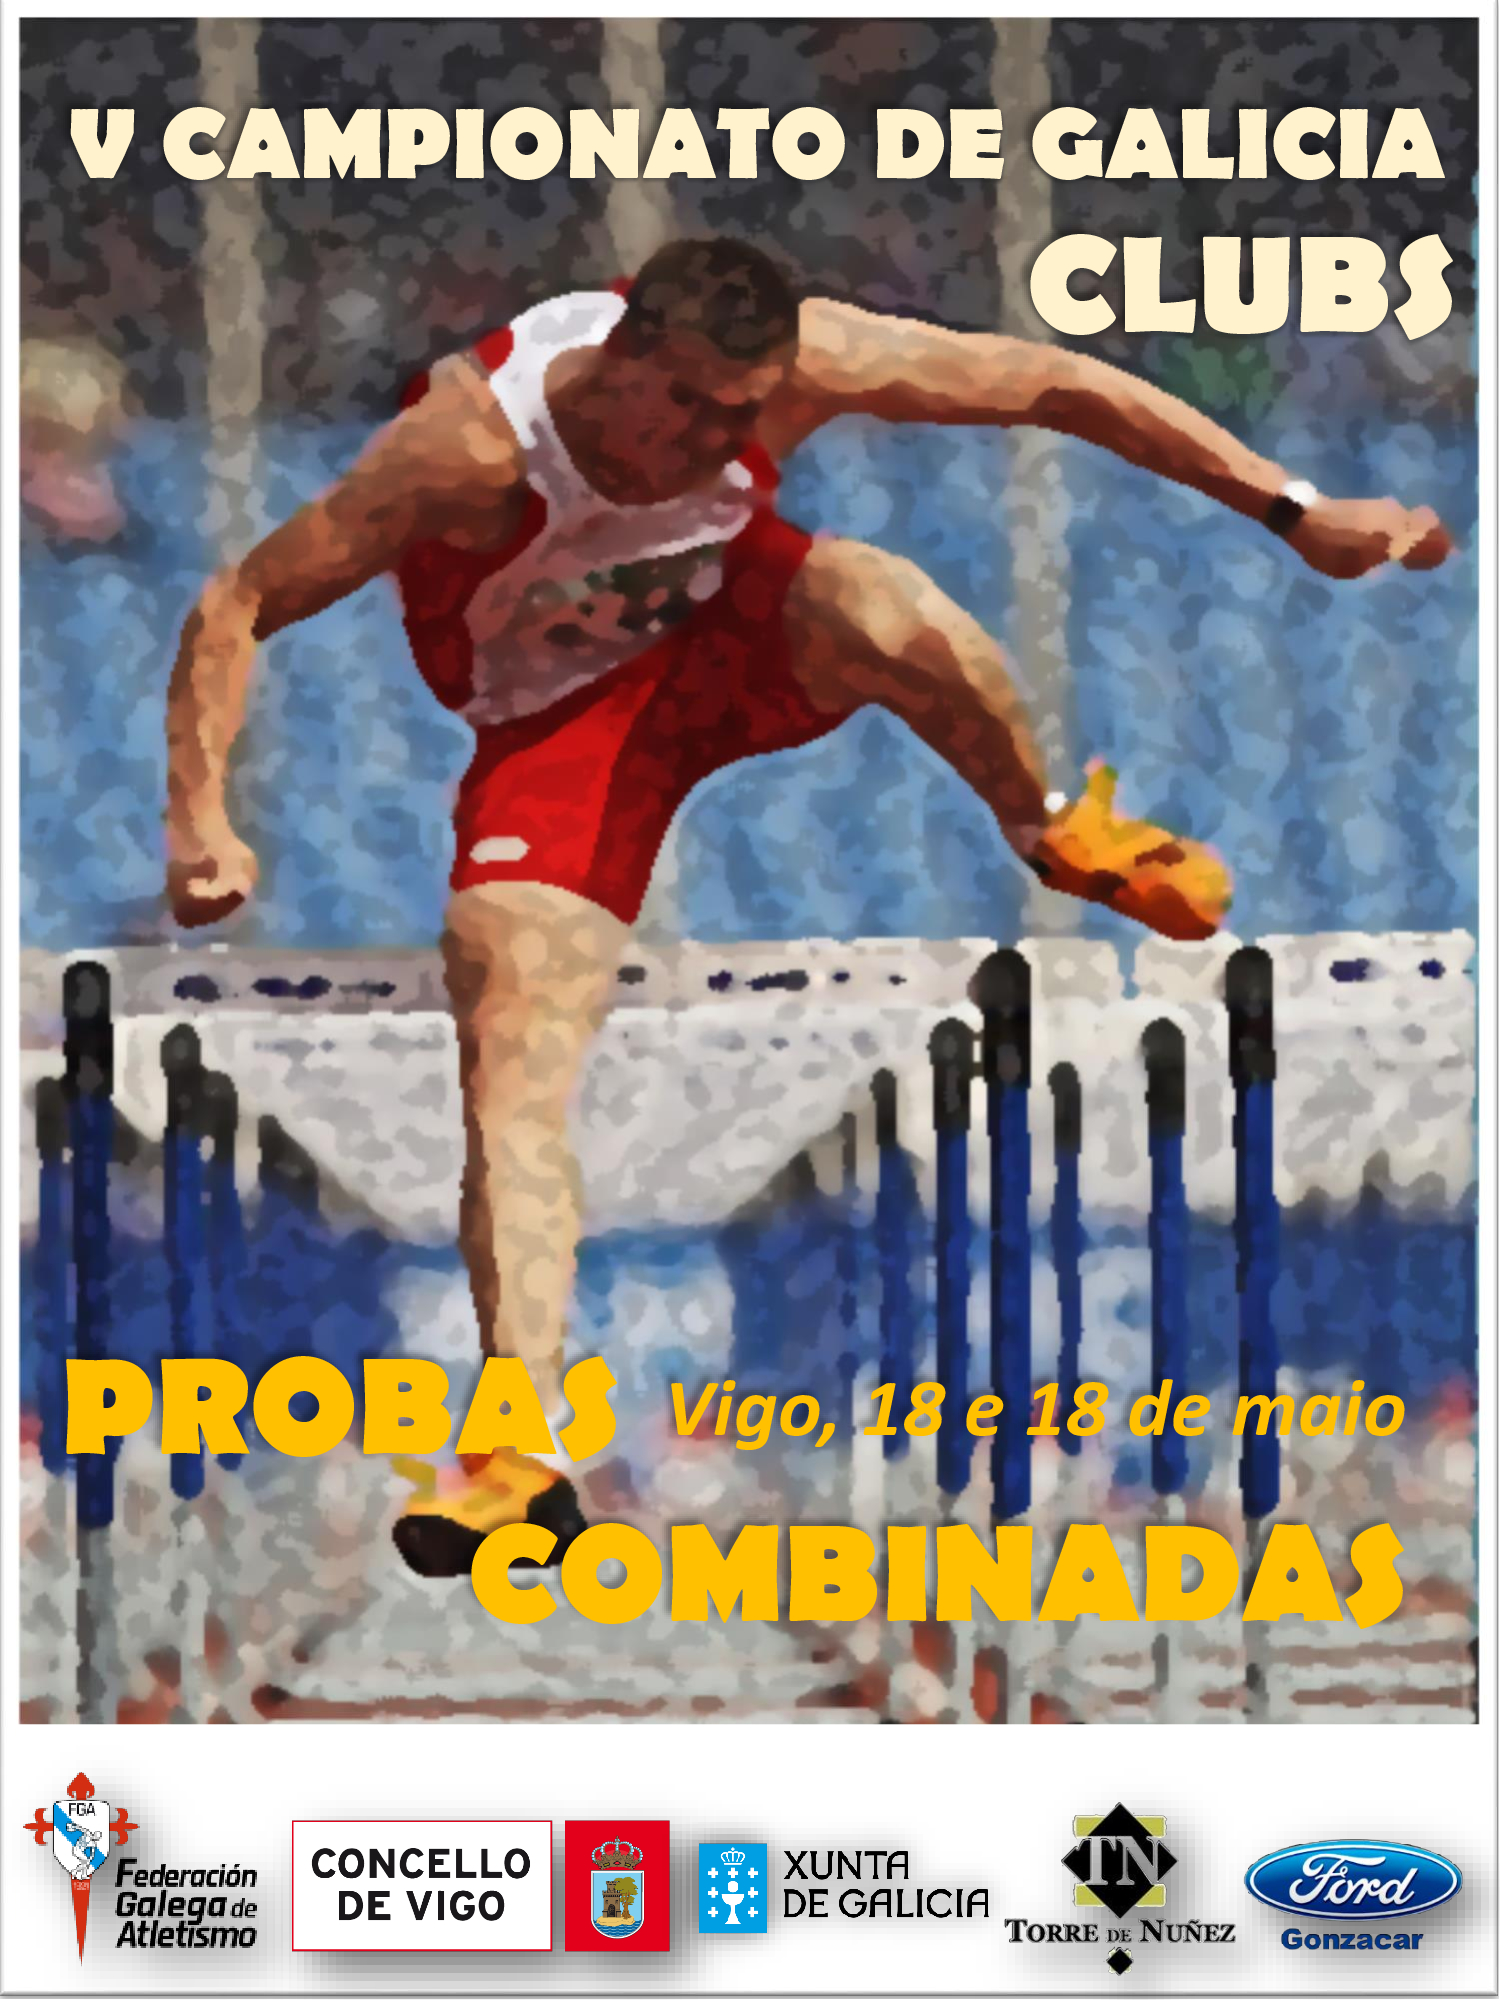 Campionato de Galicia de Clubs de Probas Combinadas 2018/2019